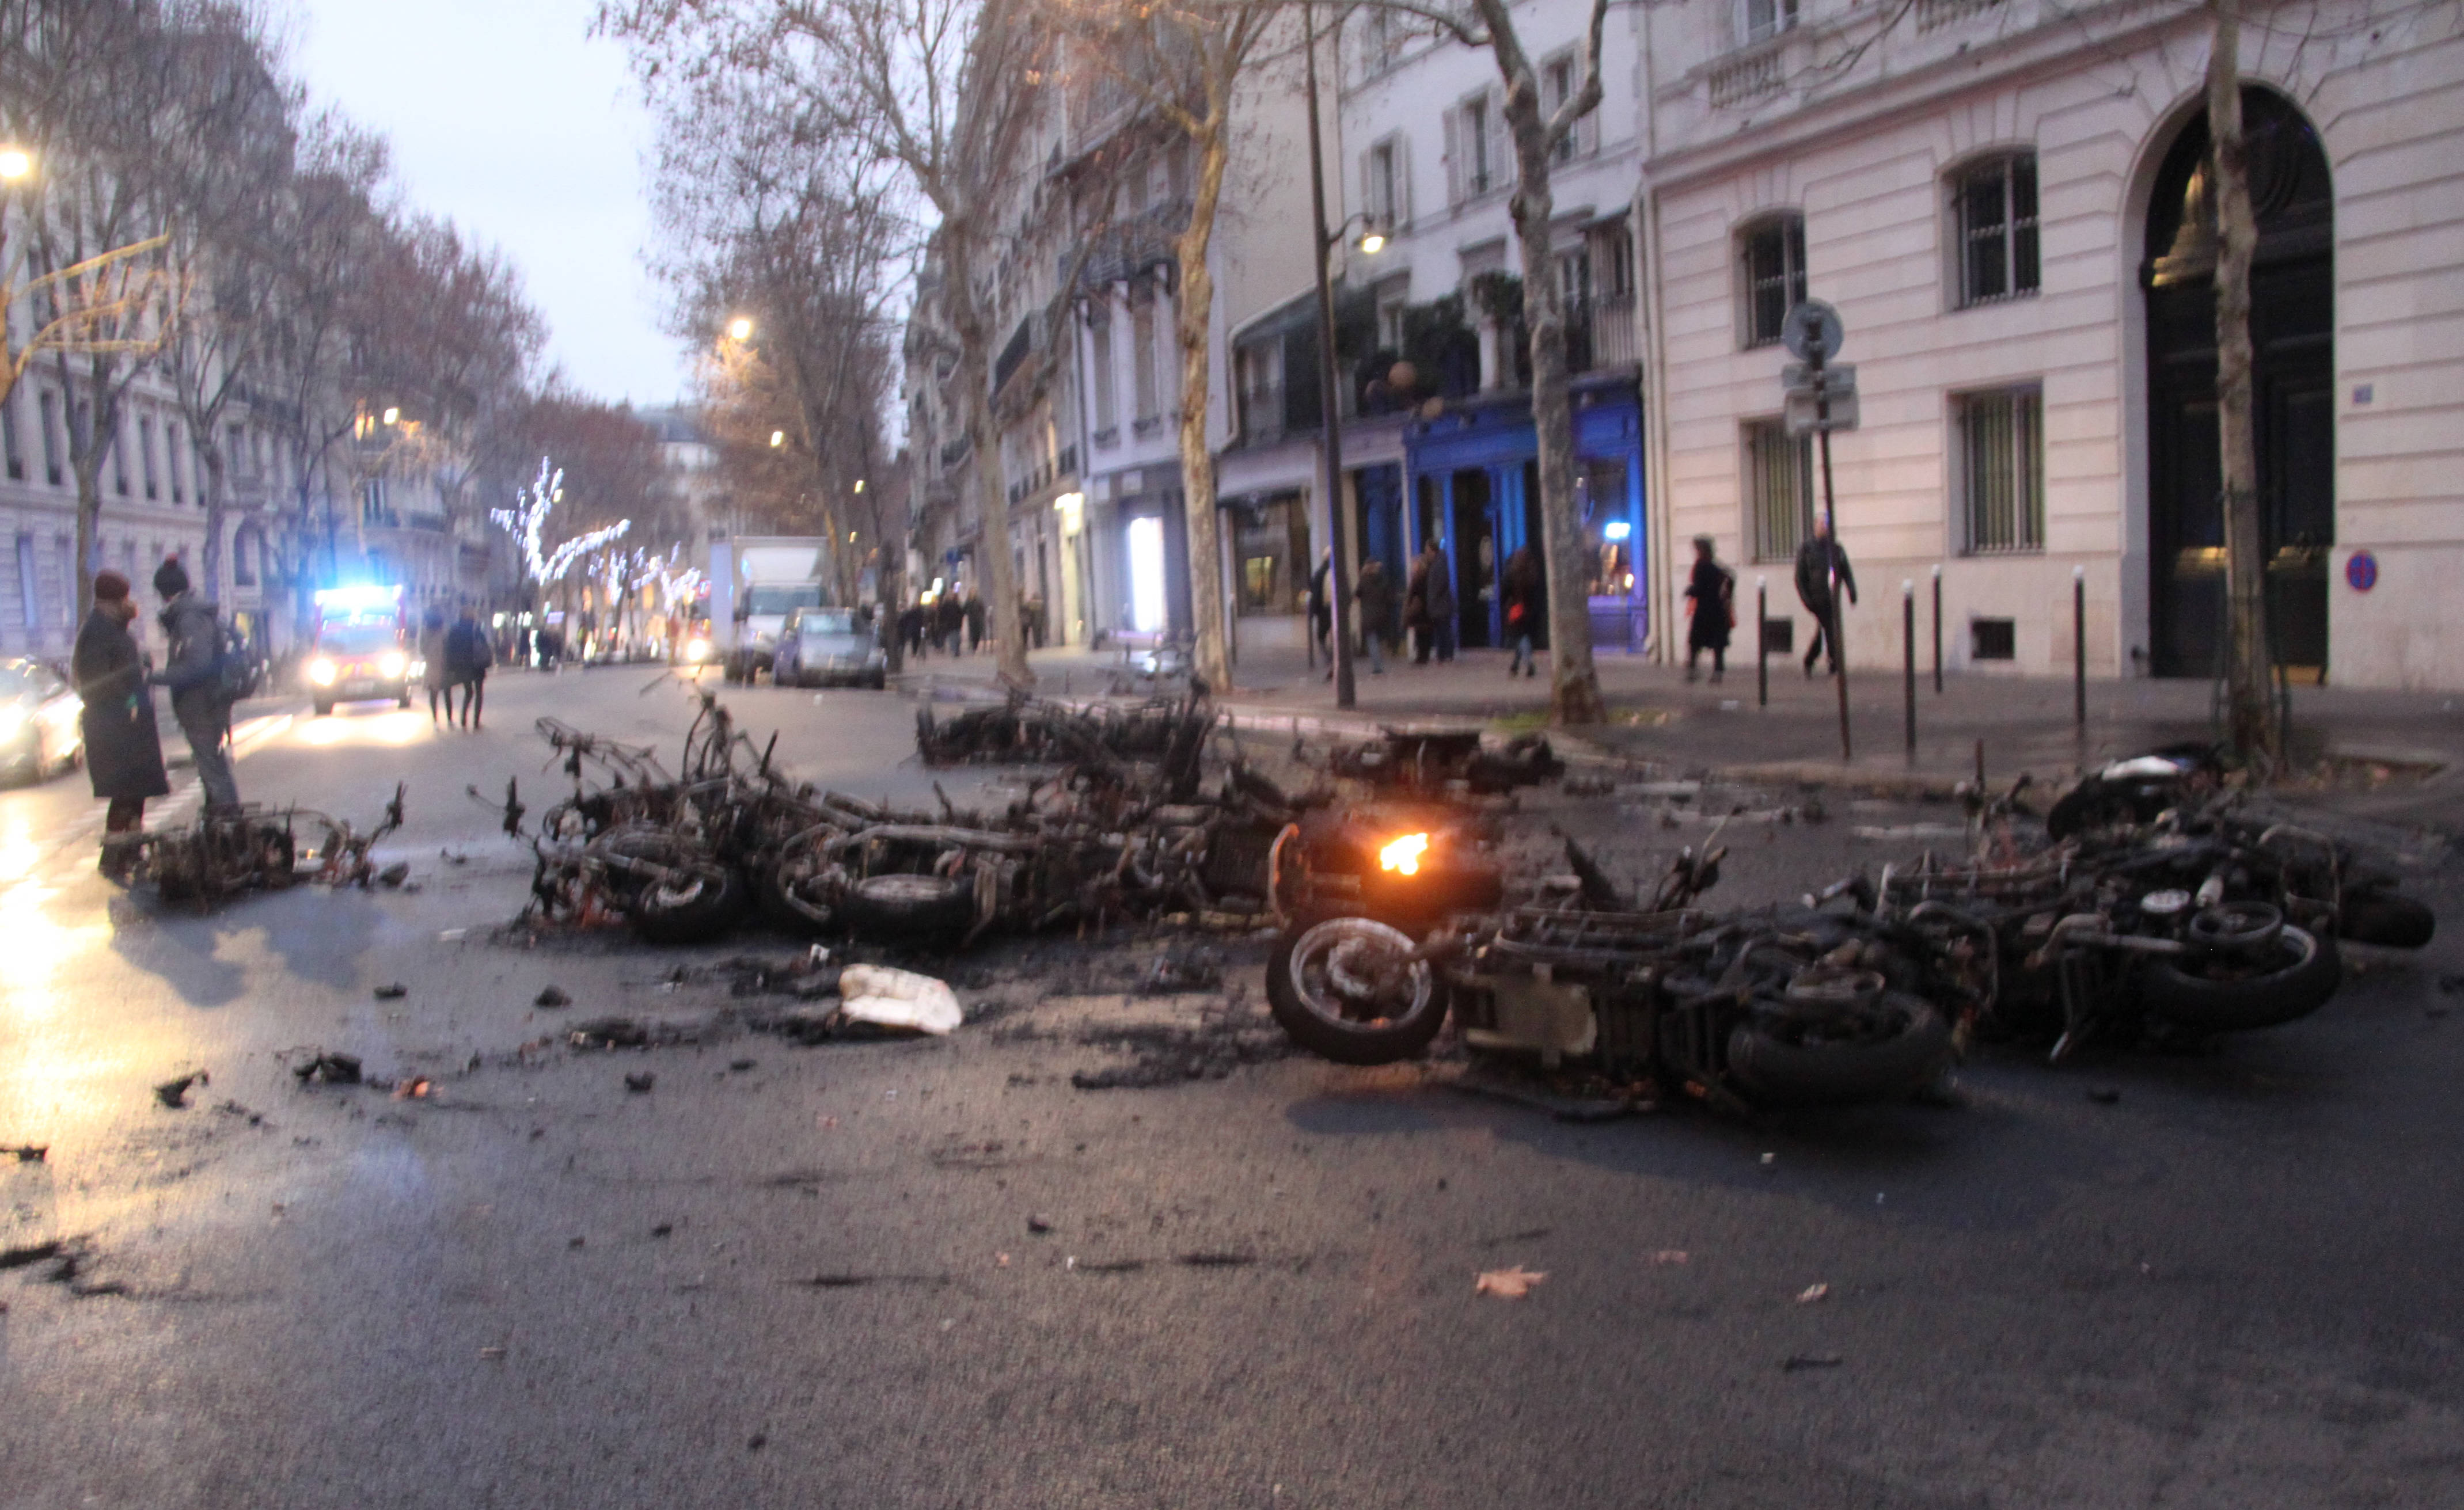 當地時間1月5日A法國2019年首輪示威登場A數以千計民眾走上街頭抗議A巴黎市中心陷入混亂A有多輛摩托車在示威期間被燒毀C 中新社 